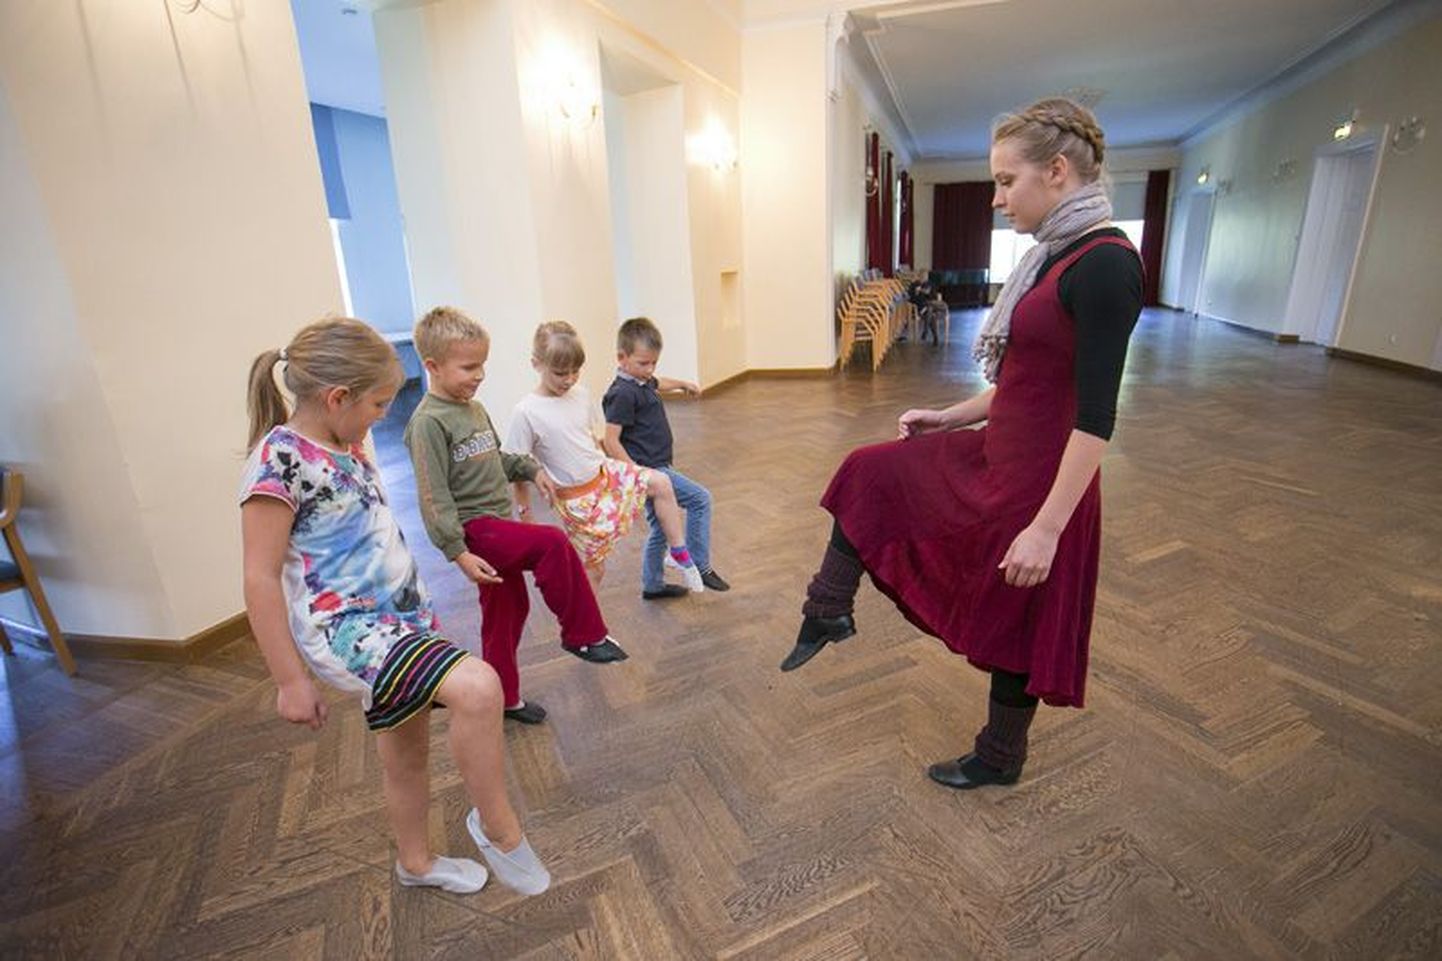 Tiiu Mürk on tantsuga tegelenud lapsest saadik, nüüd annab ta oma noore elu jooksul kogutud teadmisi ja kogemusi edasi nii väikestele kui suurtele rahvatantsijatele.